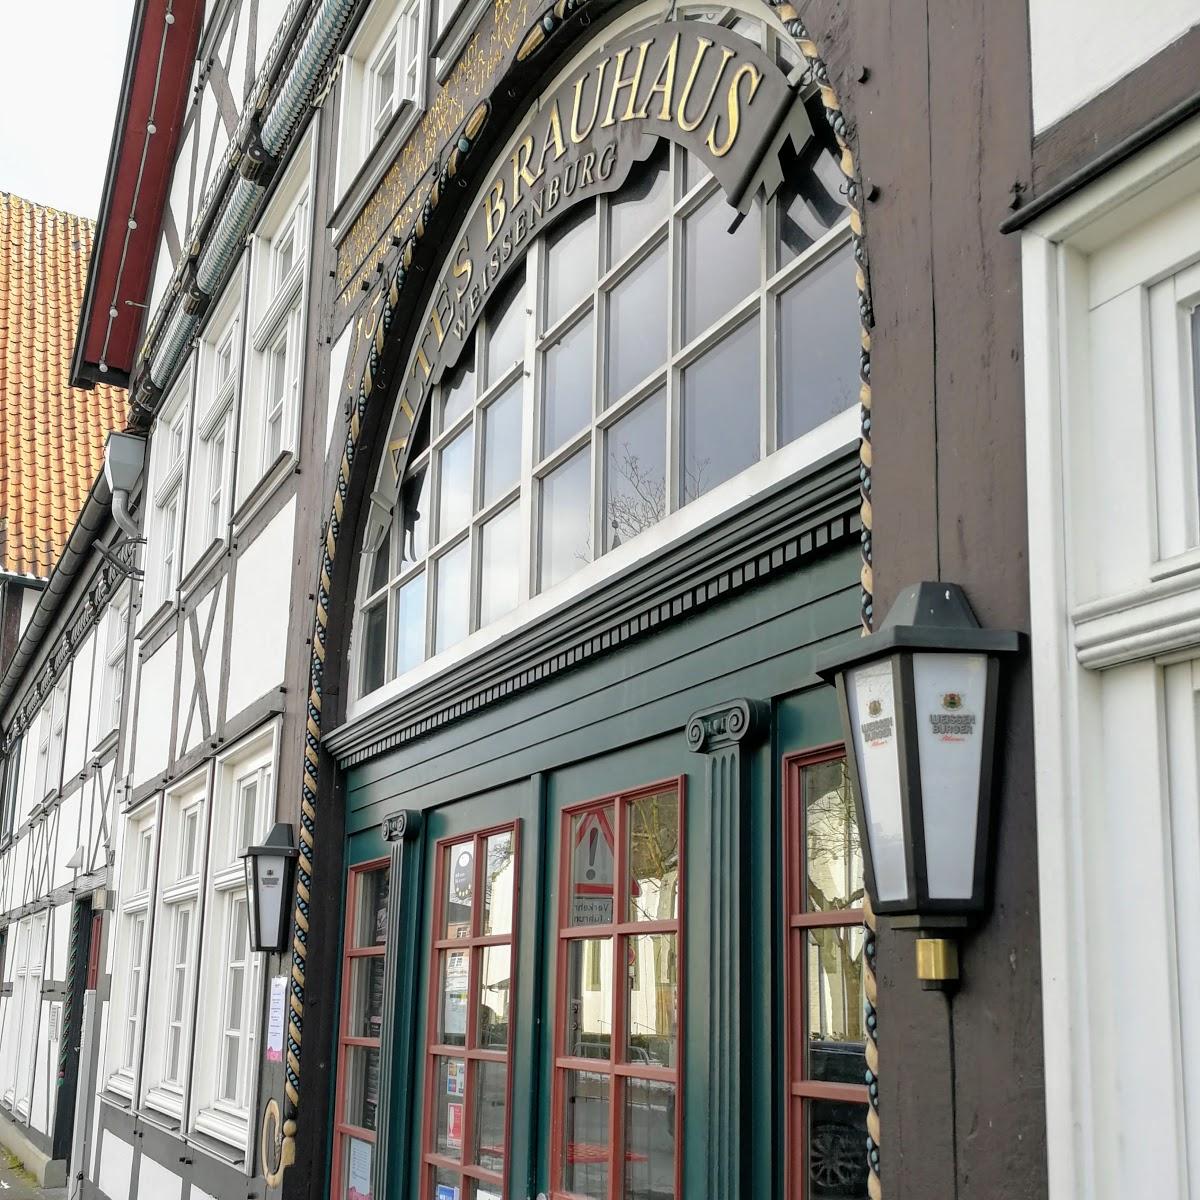 Restaurant "Altes Brauhaus Weissenburg" in  Lippstadt